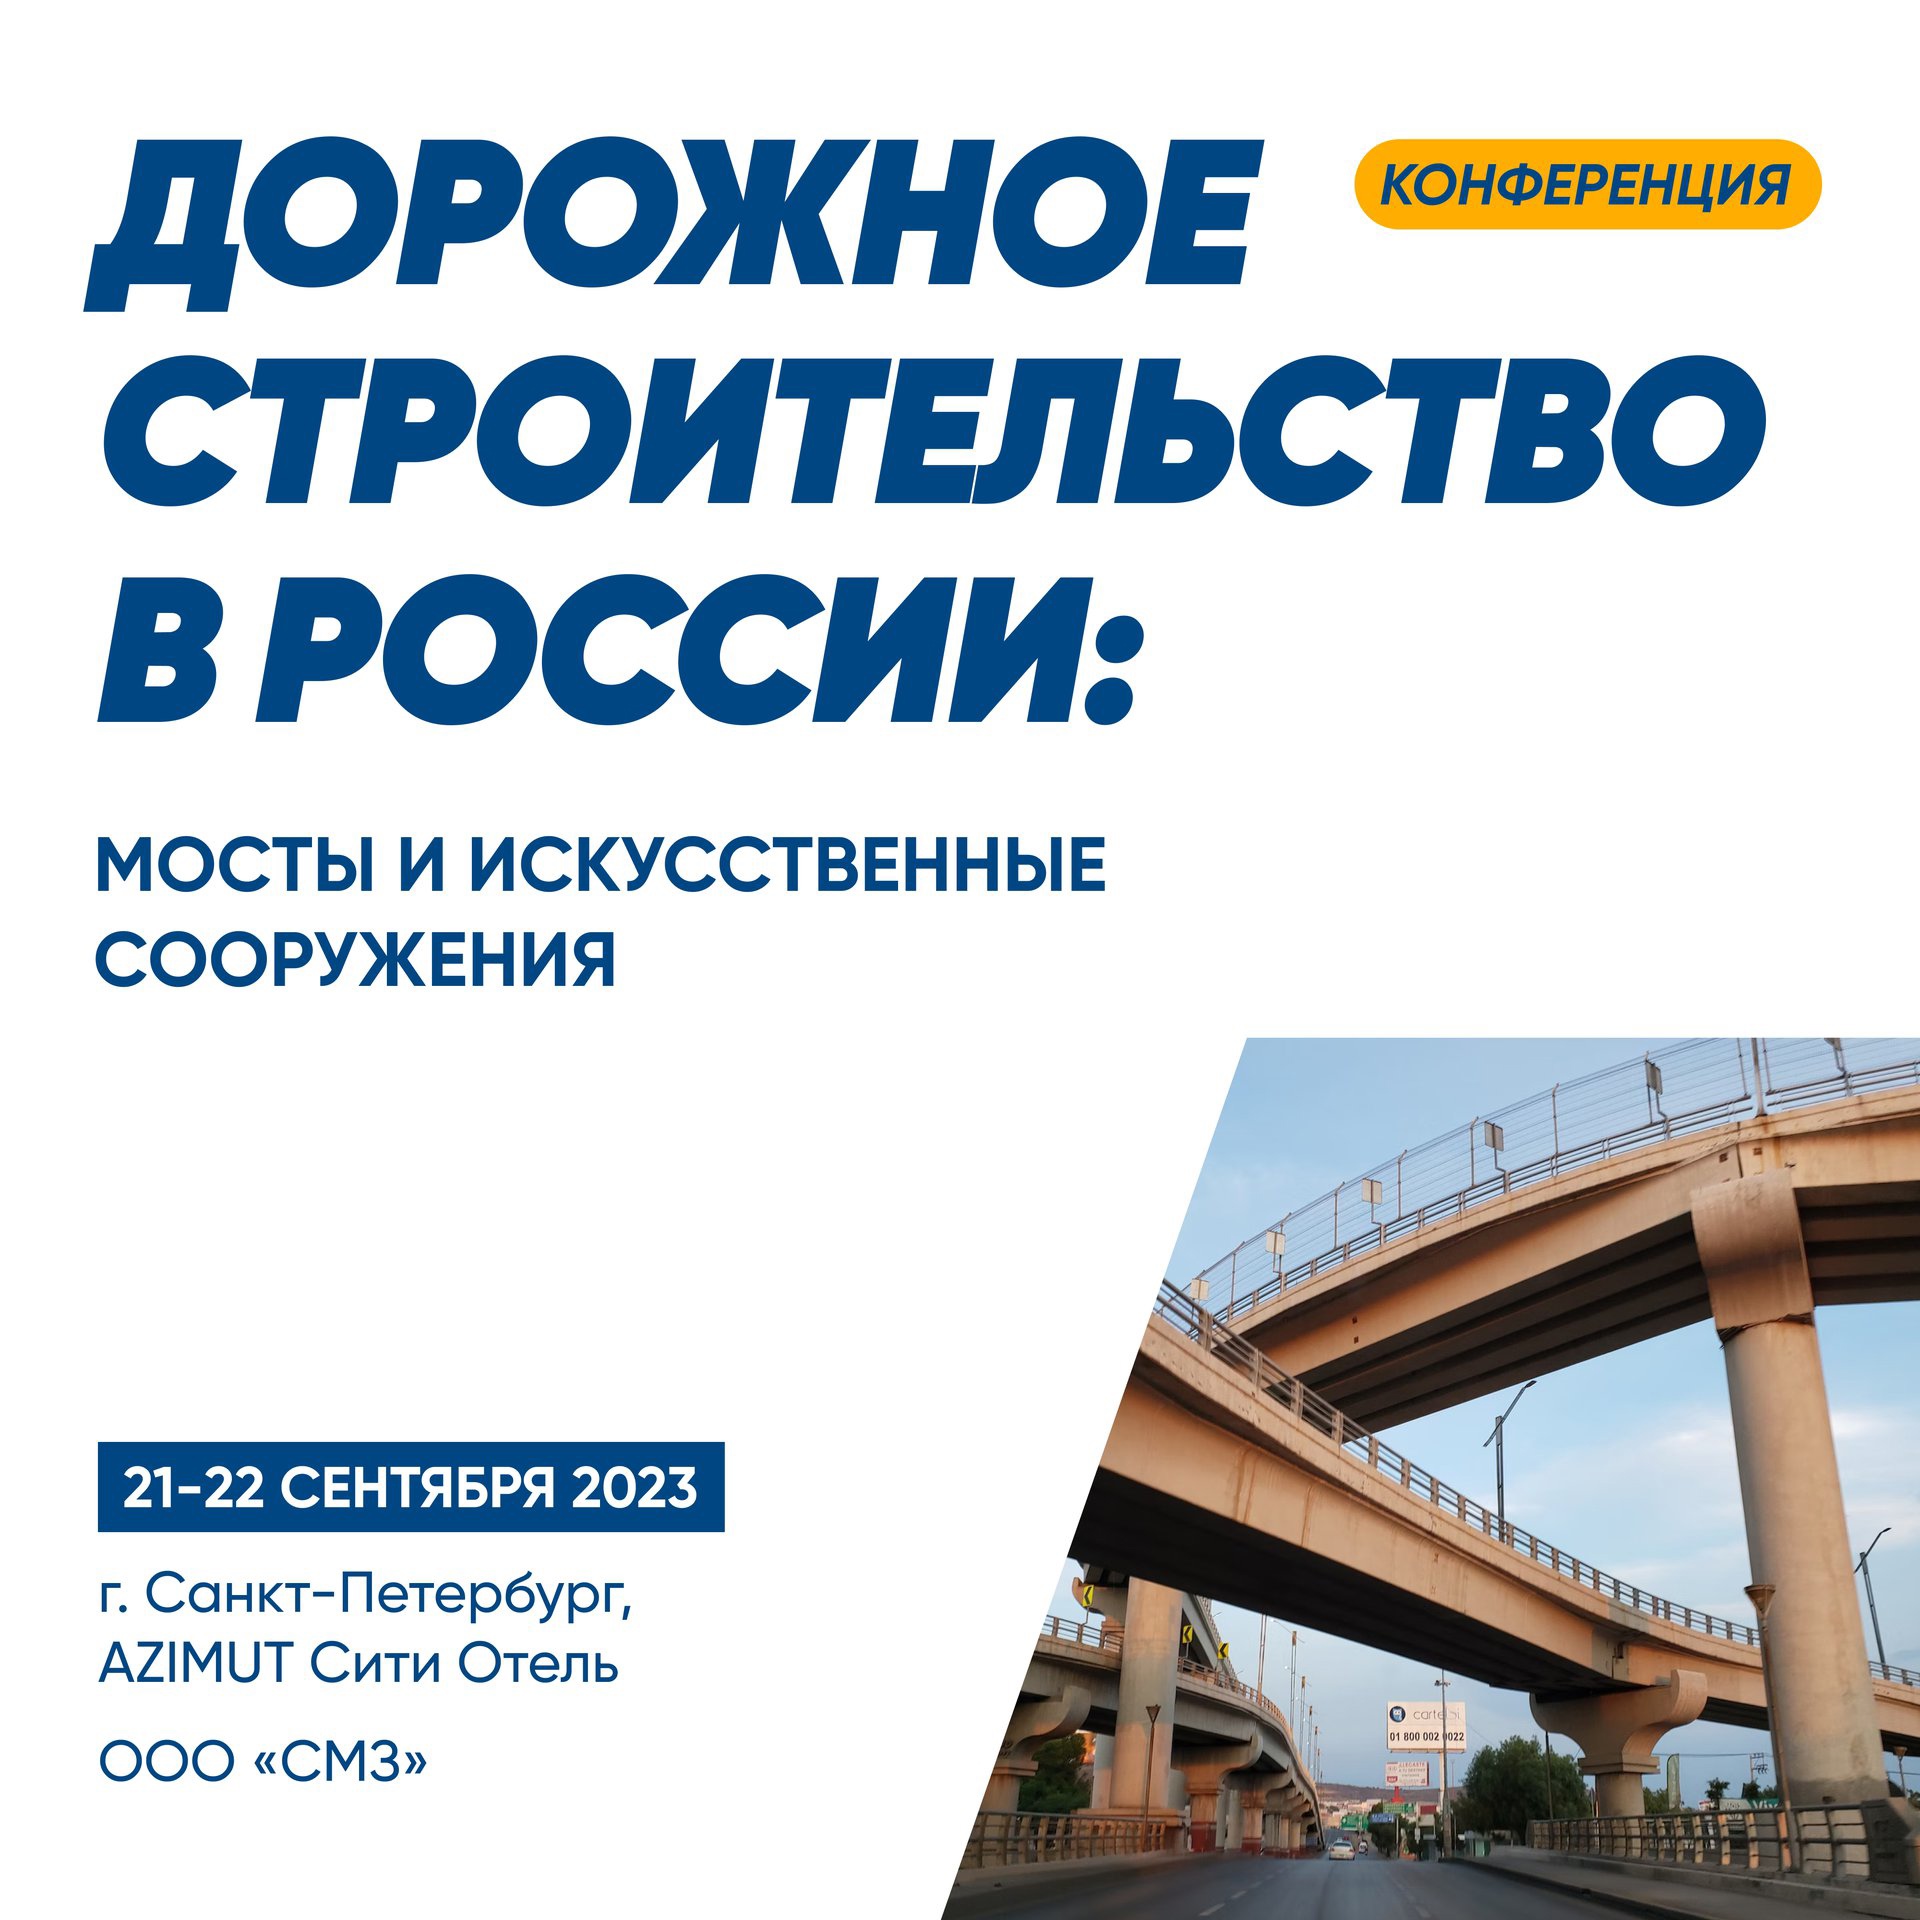 Международный форум и выставка «Дорожное строительство в России: мосты и искусственные сооружения» — 21-22 сентября - картинка